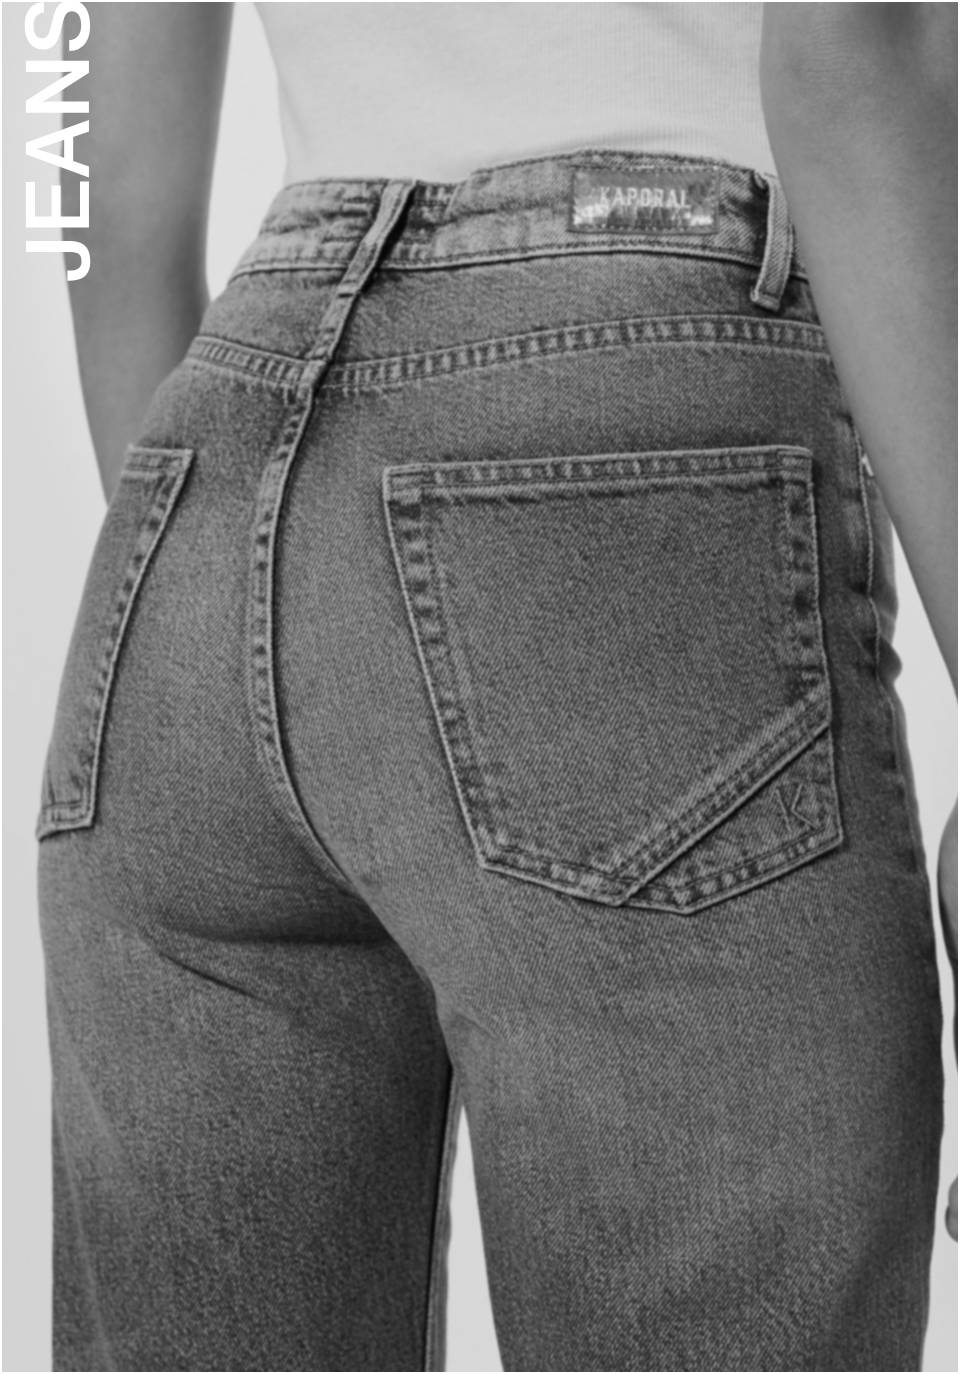 jeans femme outlet